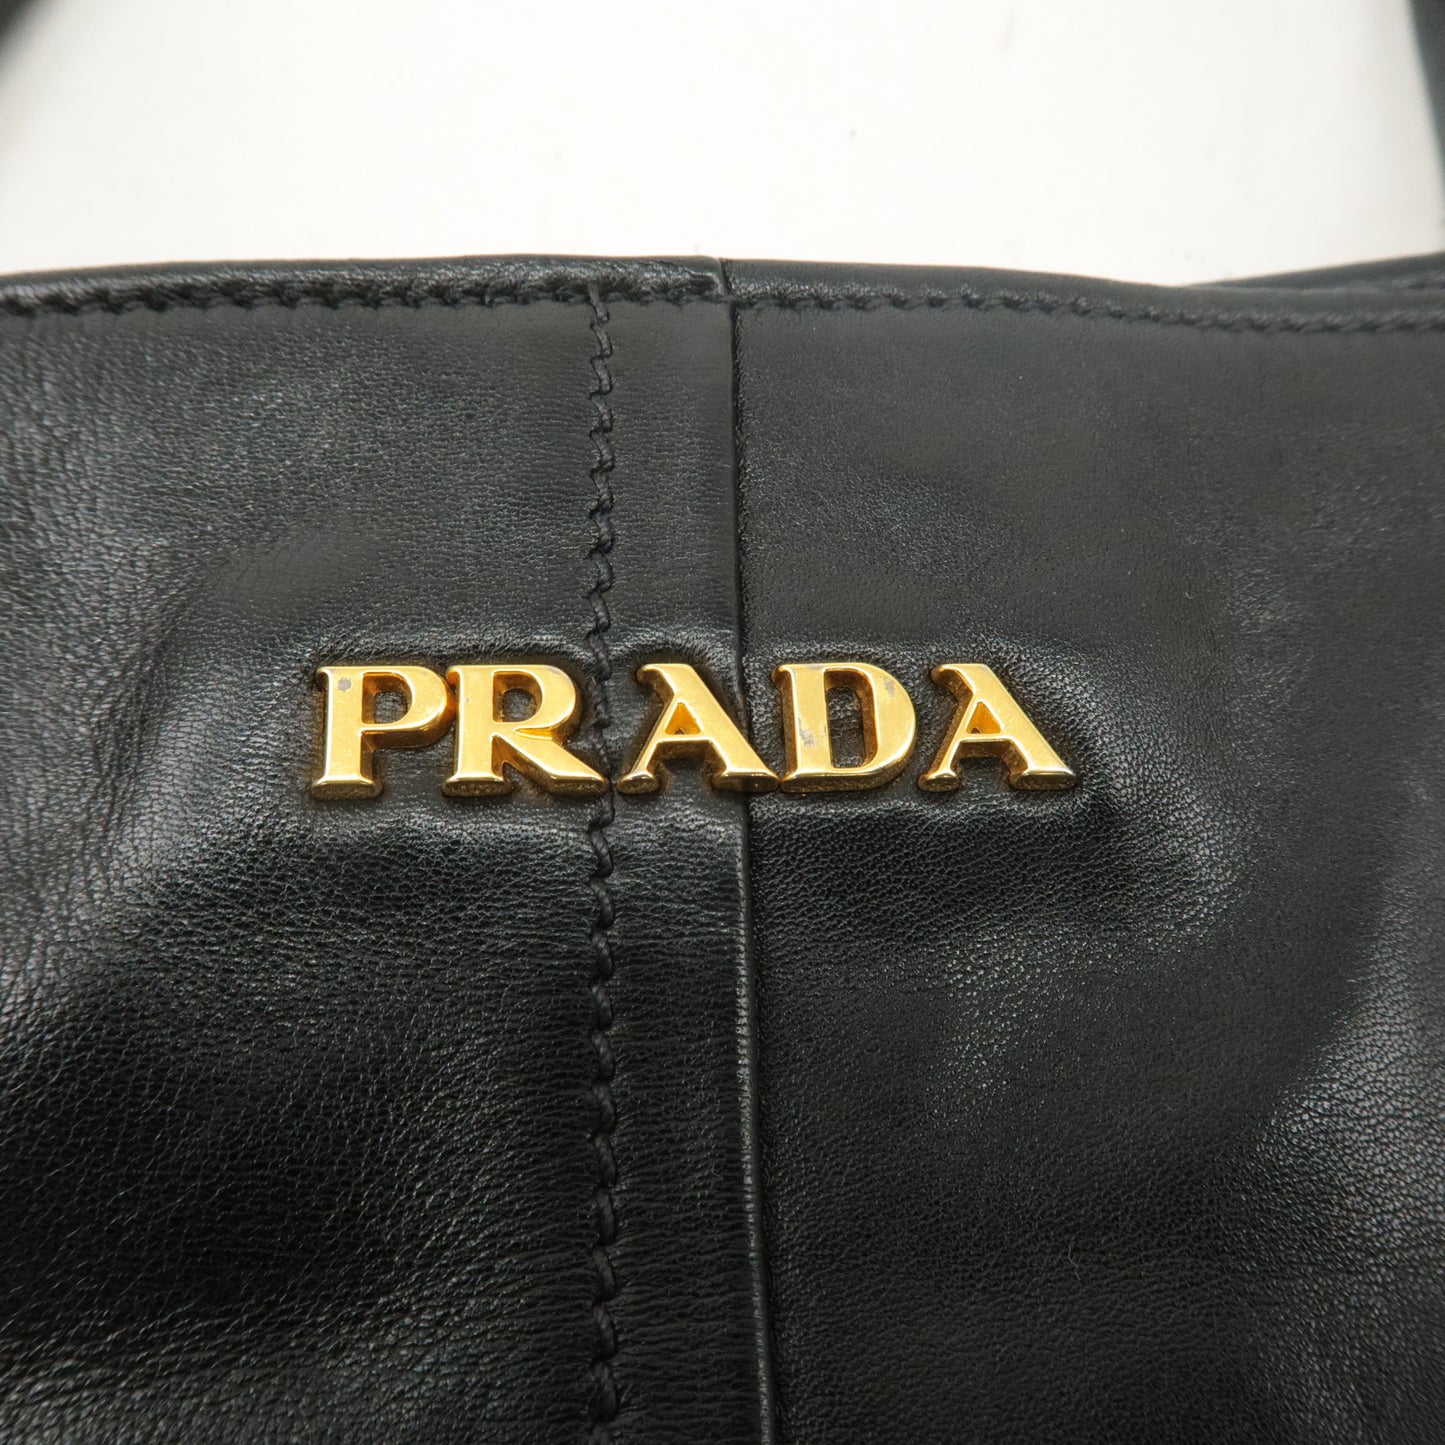 PRADA Logo Leather Tote Bag Shoulder Bag Black Gold Hardware